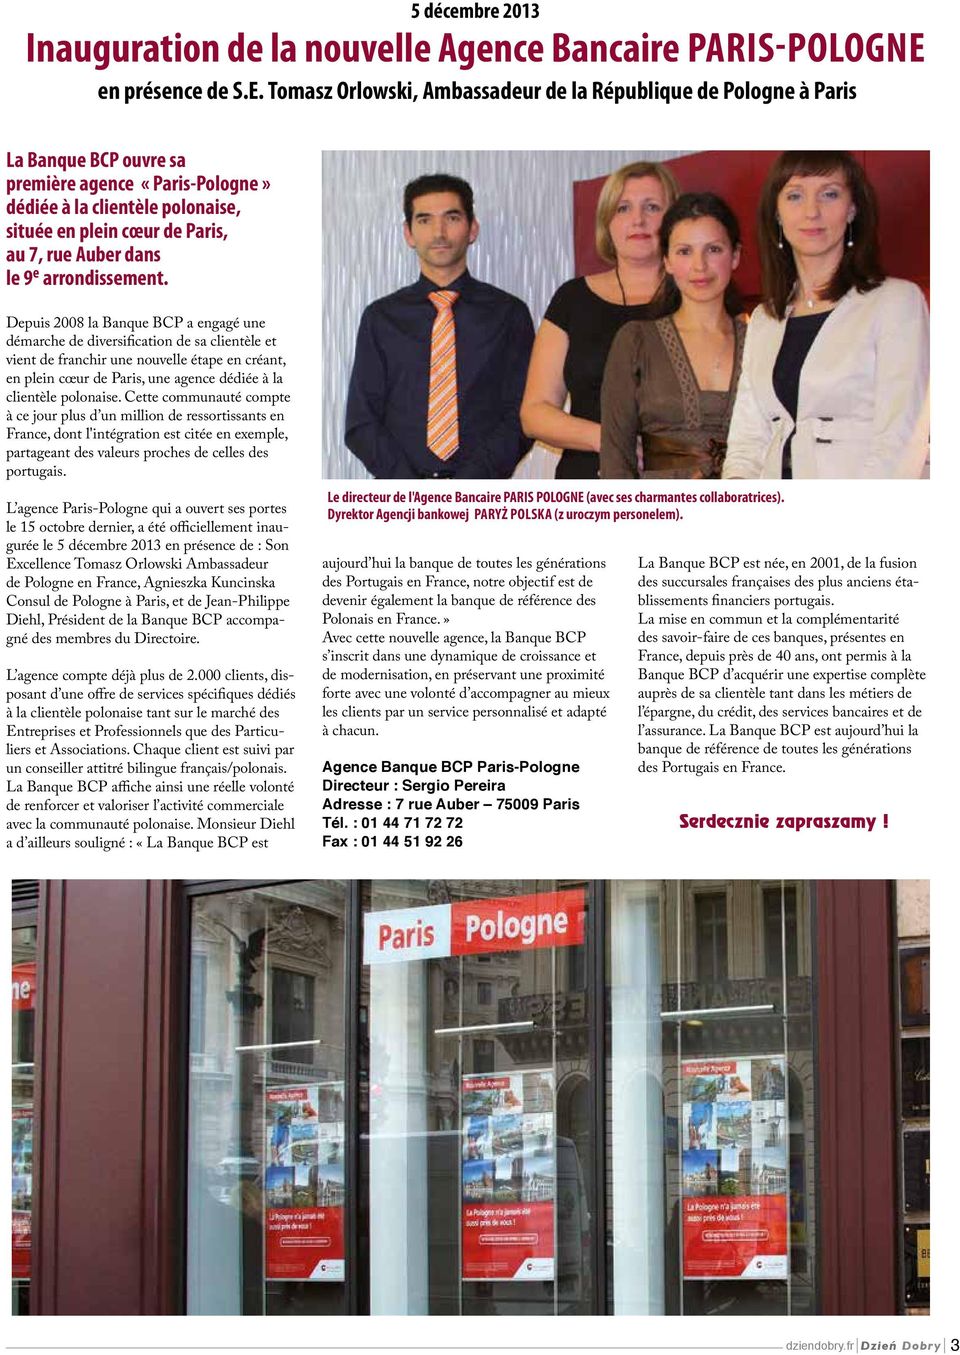 Tomasz Orlowski, Ambassadeur de la République de Pologne à Paris La Banque BCP ouvre sa première agence «Paris-Pologne» dédiée à la clientèle polonaise, située en plein cœur de Paris, au 7, rue Auber